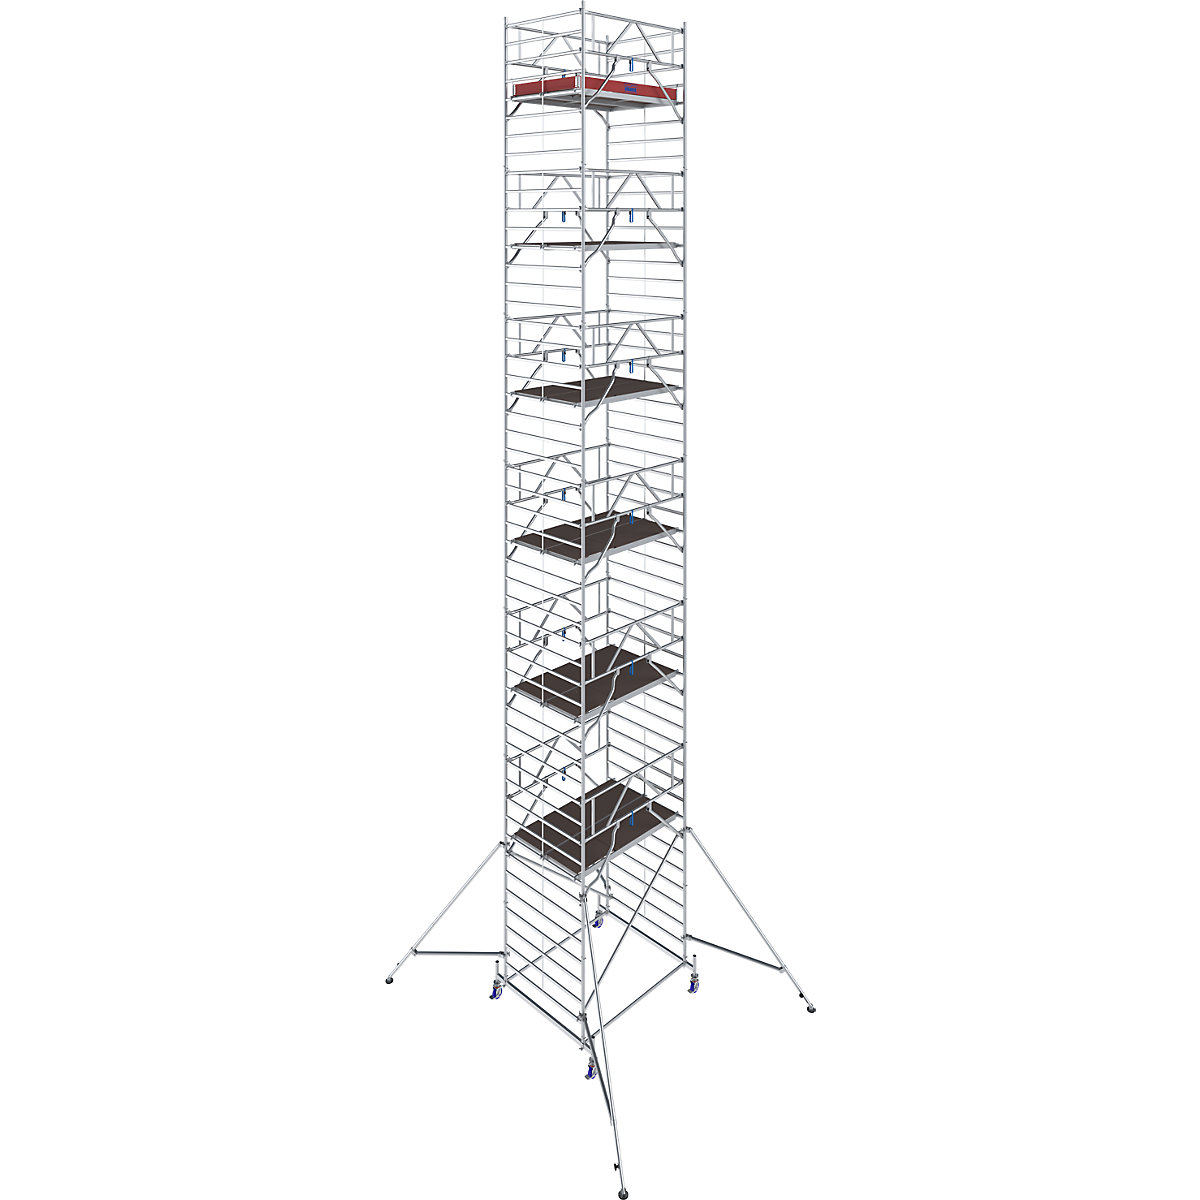 Fahrgerüst STABILO Serie 50 KRAUSE, Plattformlänge 2 m, Arbeitshöhe 14,40 m